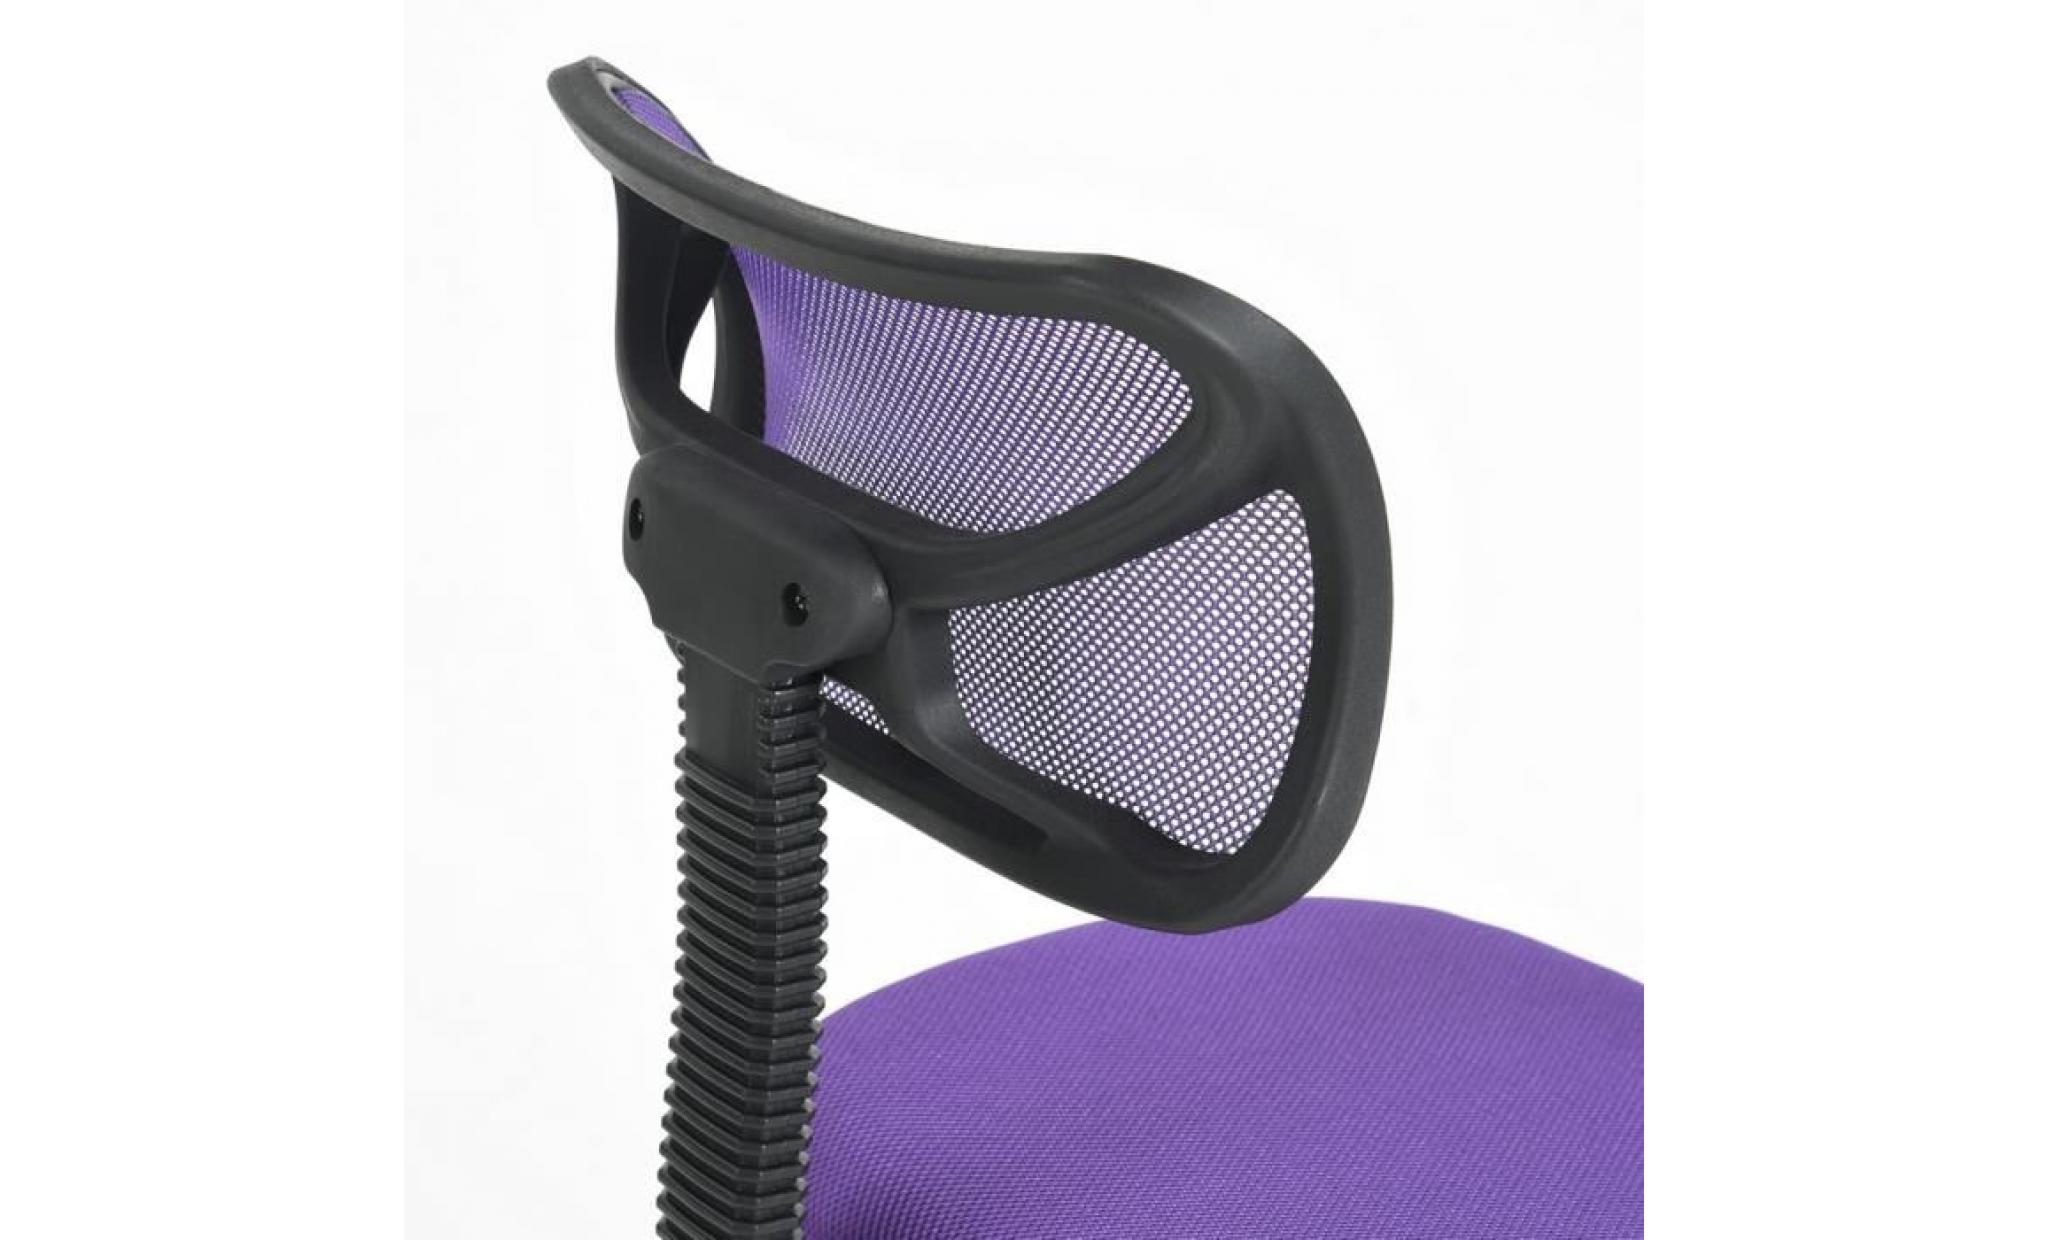 chaise de bureau réglable en hauteur design mesh enfants siège d'ordinateur siège de travail chaise pivotante chaise d'étude sans br pas cher